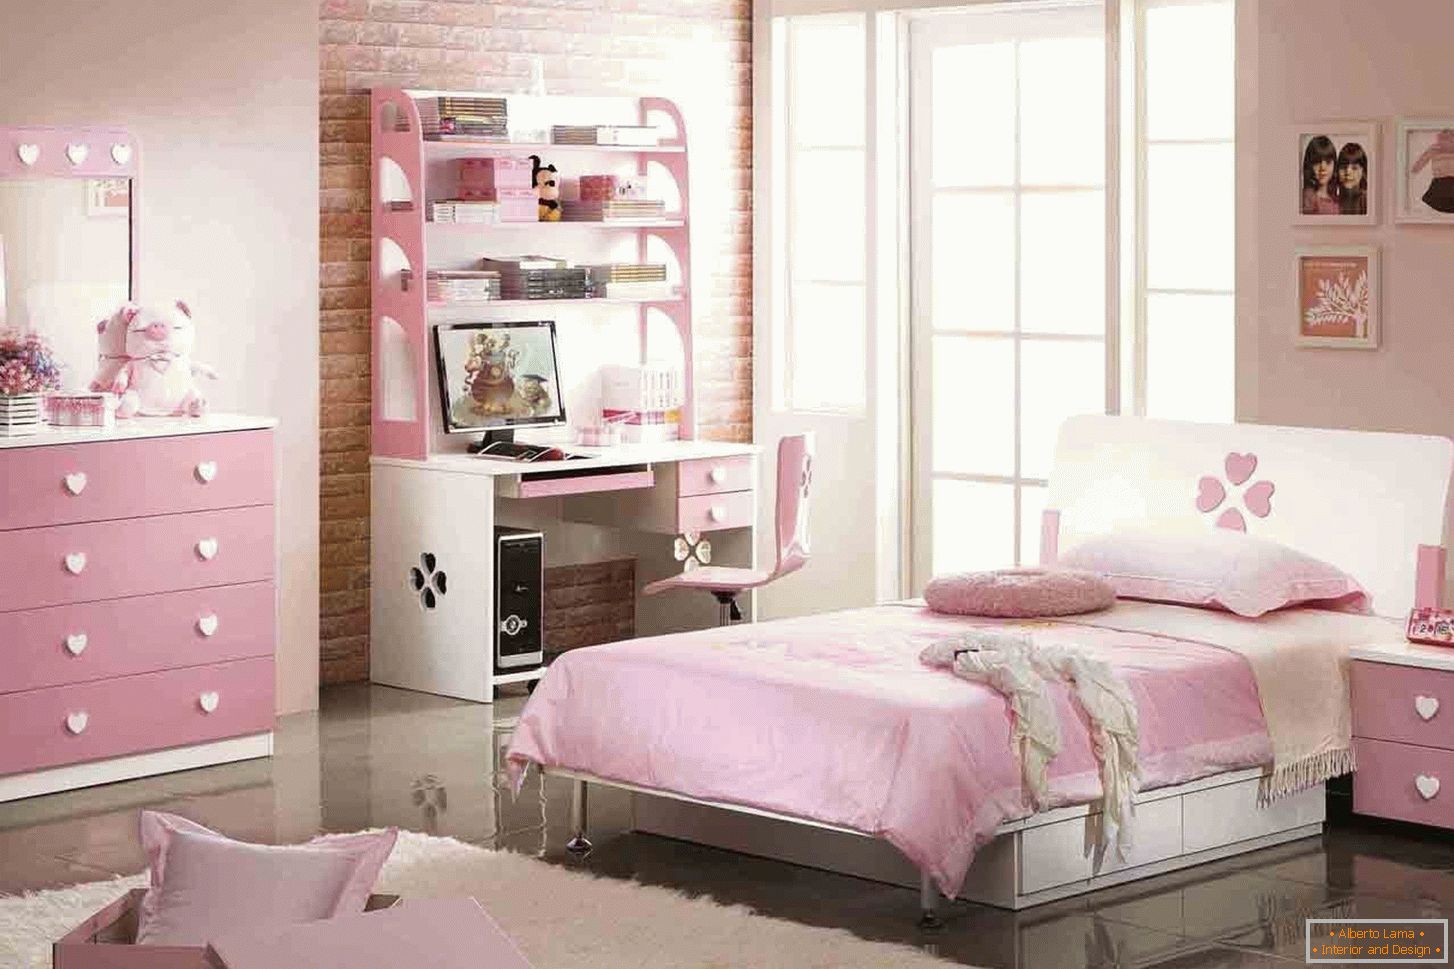 Projeto de um quarto para um adolescente na cor rosa